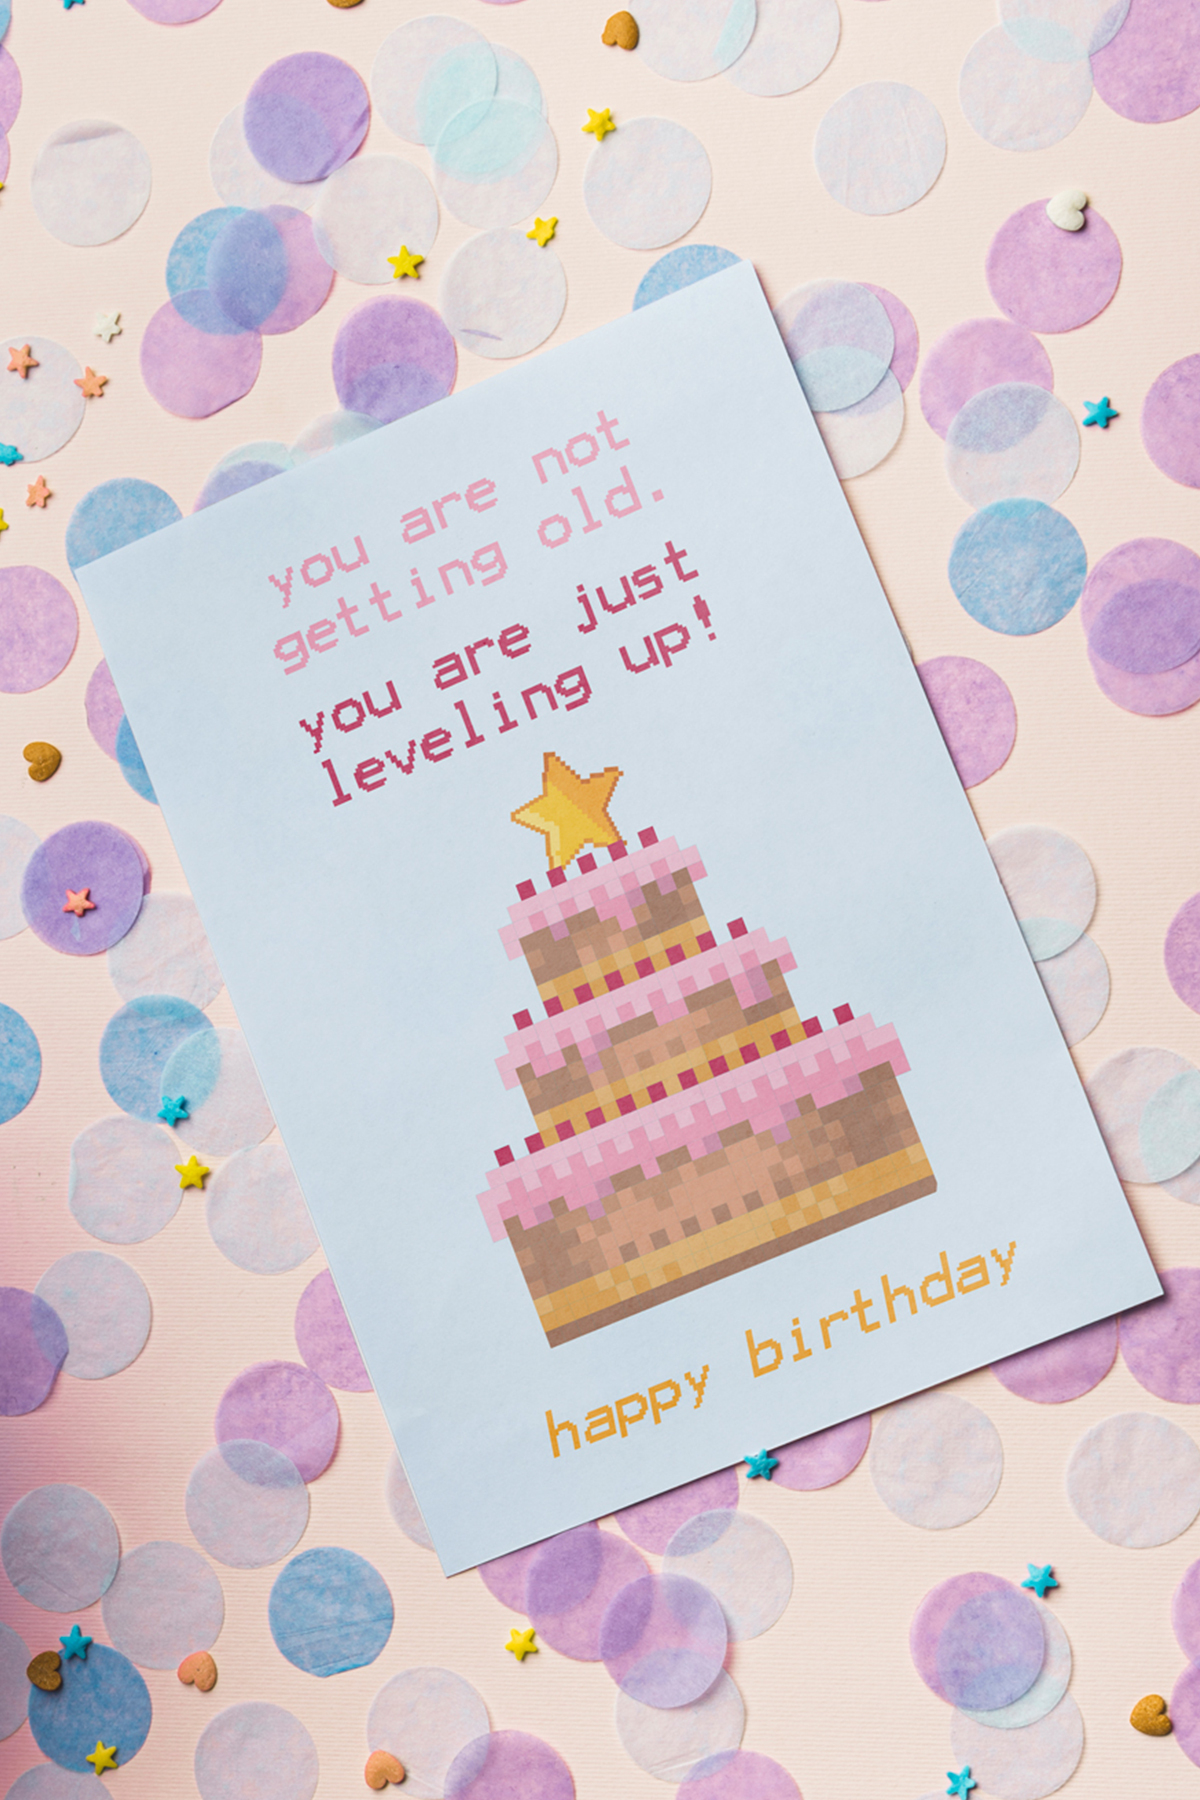 10 Coole Geburtstagskarten Zum Ausdrucken | Free Printable innen Geburtstagskarten Selbst Drucken Kostenlos